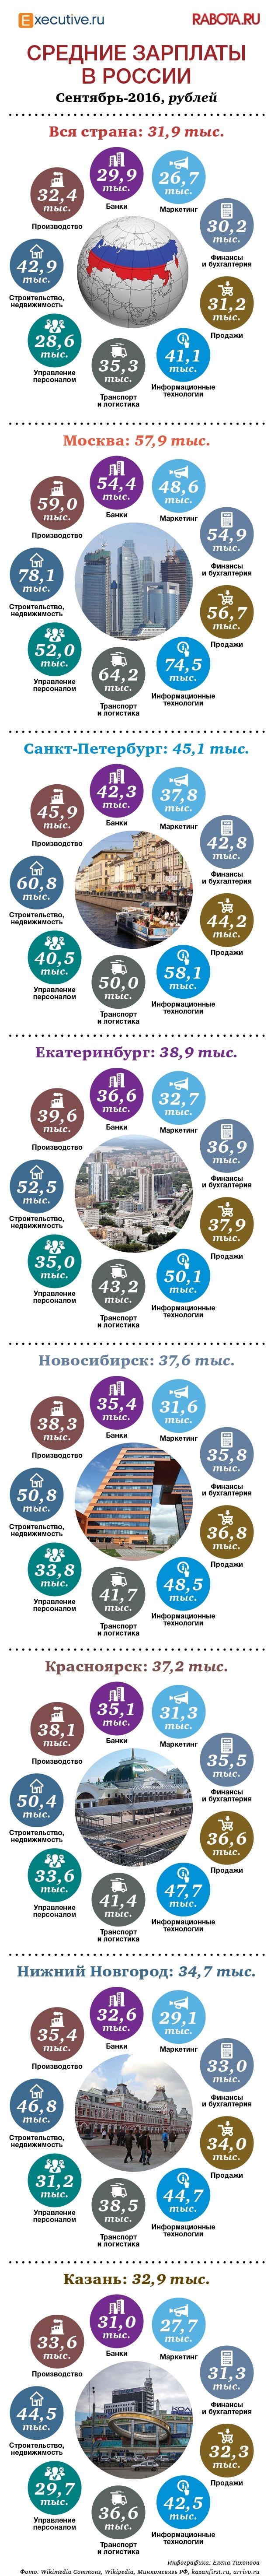 Обзор зарплат в крупных городах России в октябре 2016 года